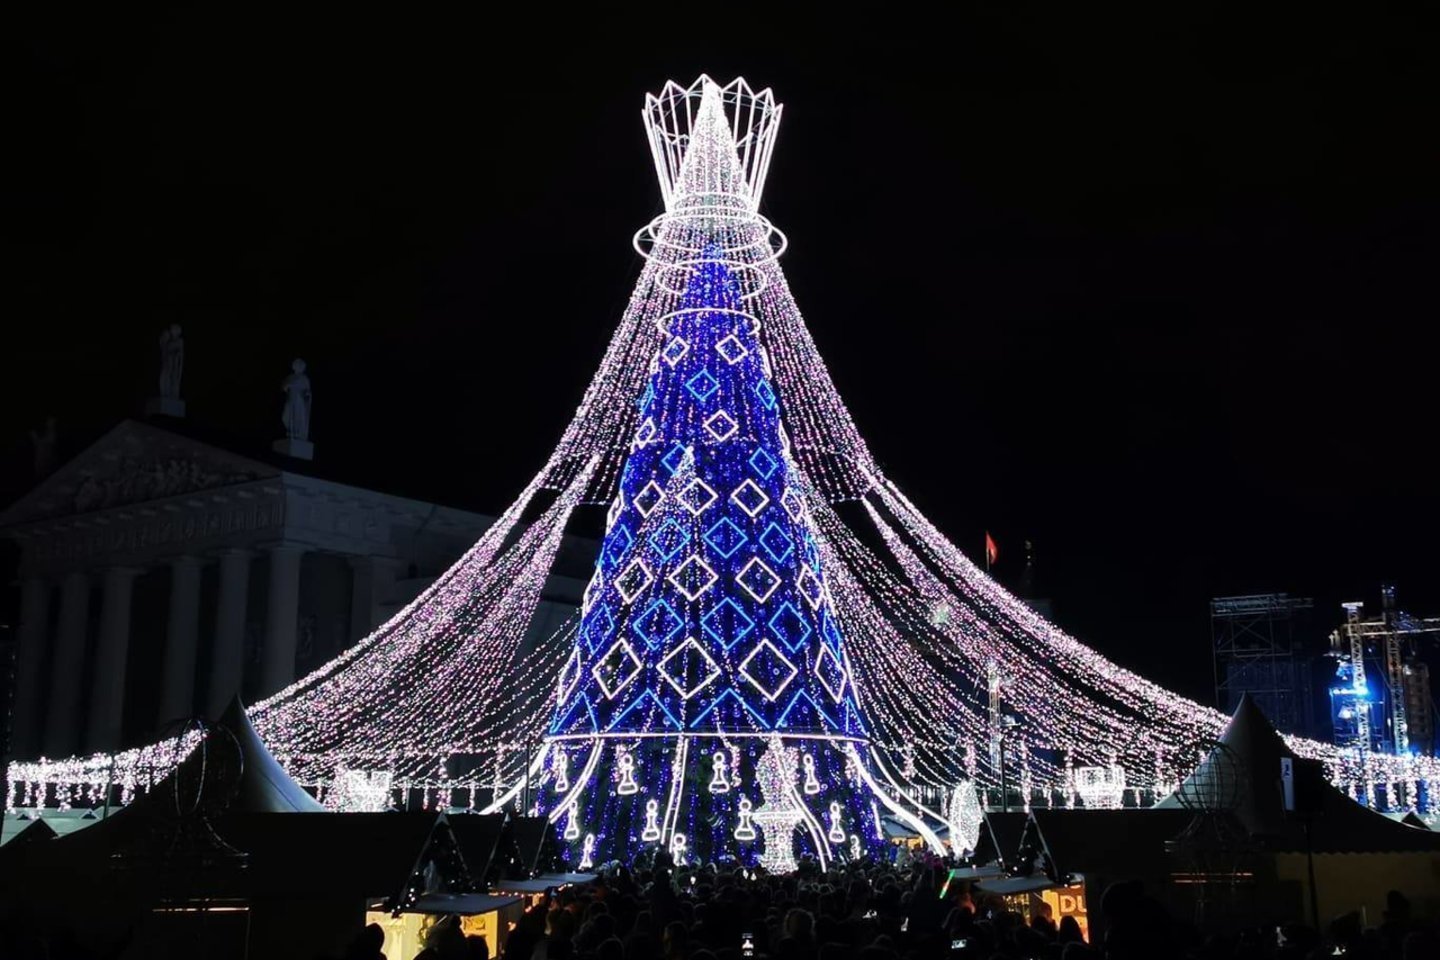 Kalėdiniams papuošimams ir šventiniams renginiams Vilnius, Kaunas, Klaipėda išleido 812 tūkst. eurų.<br>T.Bauro nuotr.